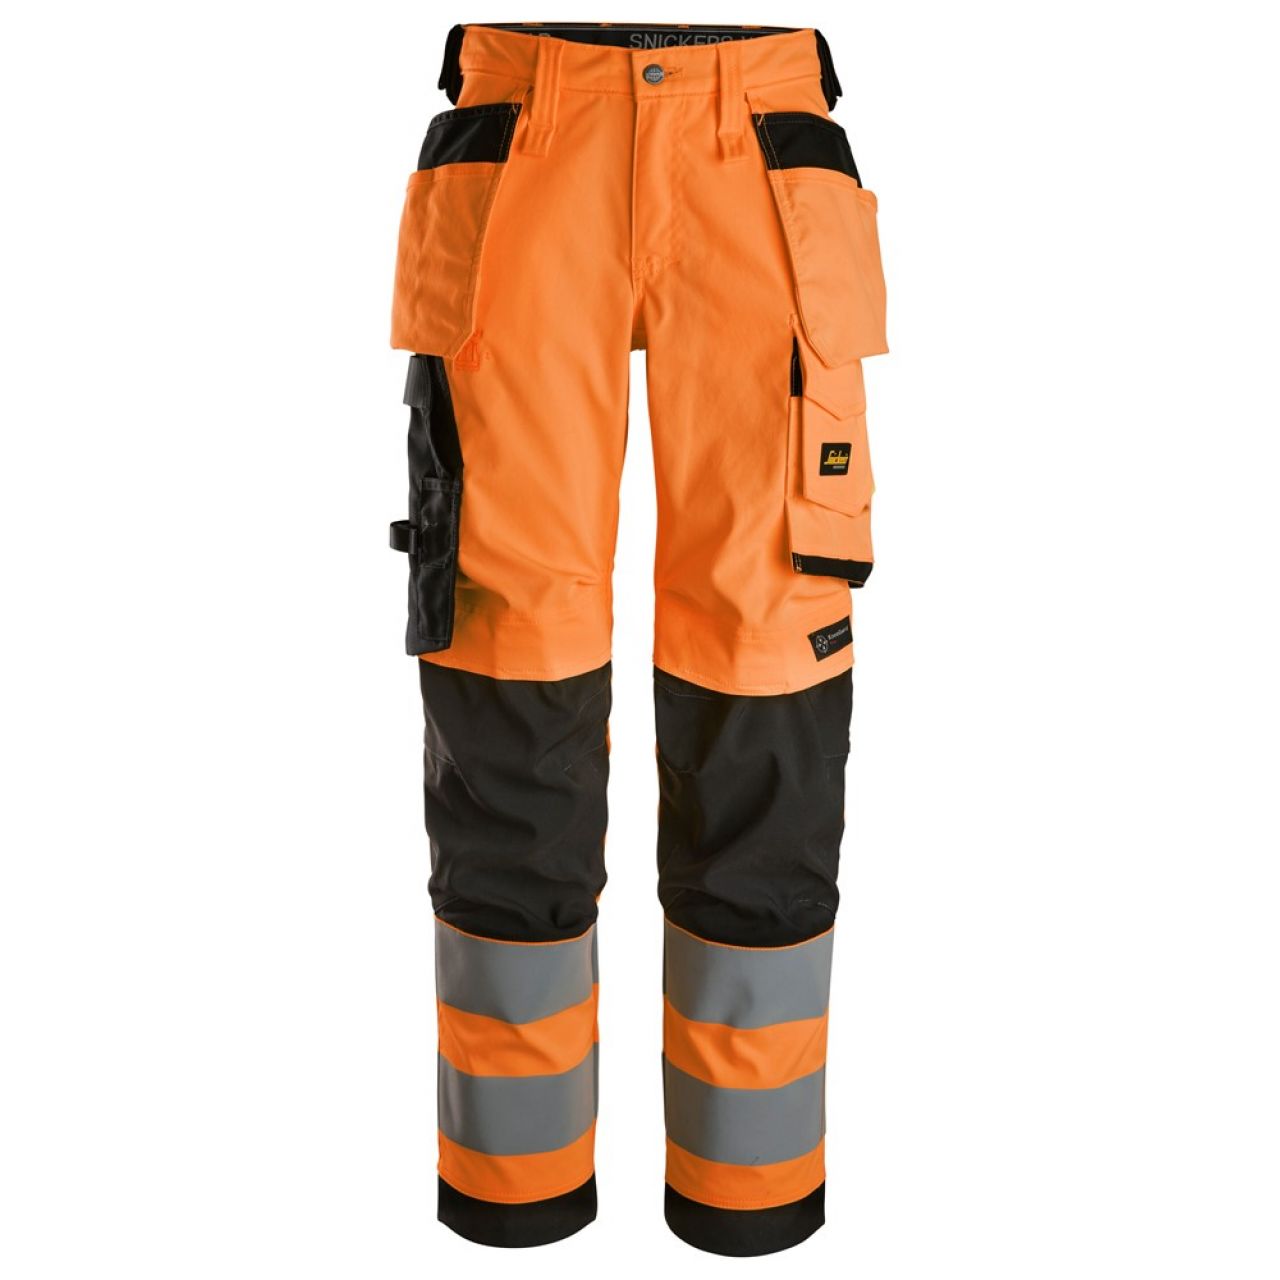 6743 Pantalones largos de trabajo elásticos de alta visibilidad clase 2 para mujer con bolsillos flotantes naranja-negro talla 21